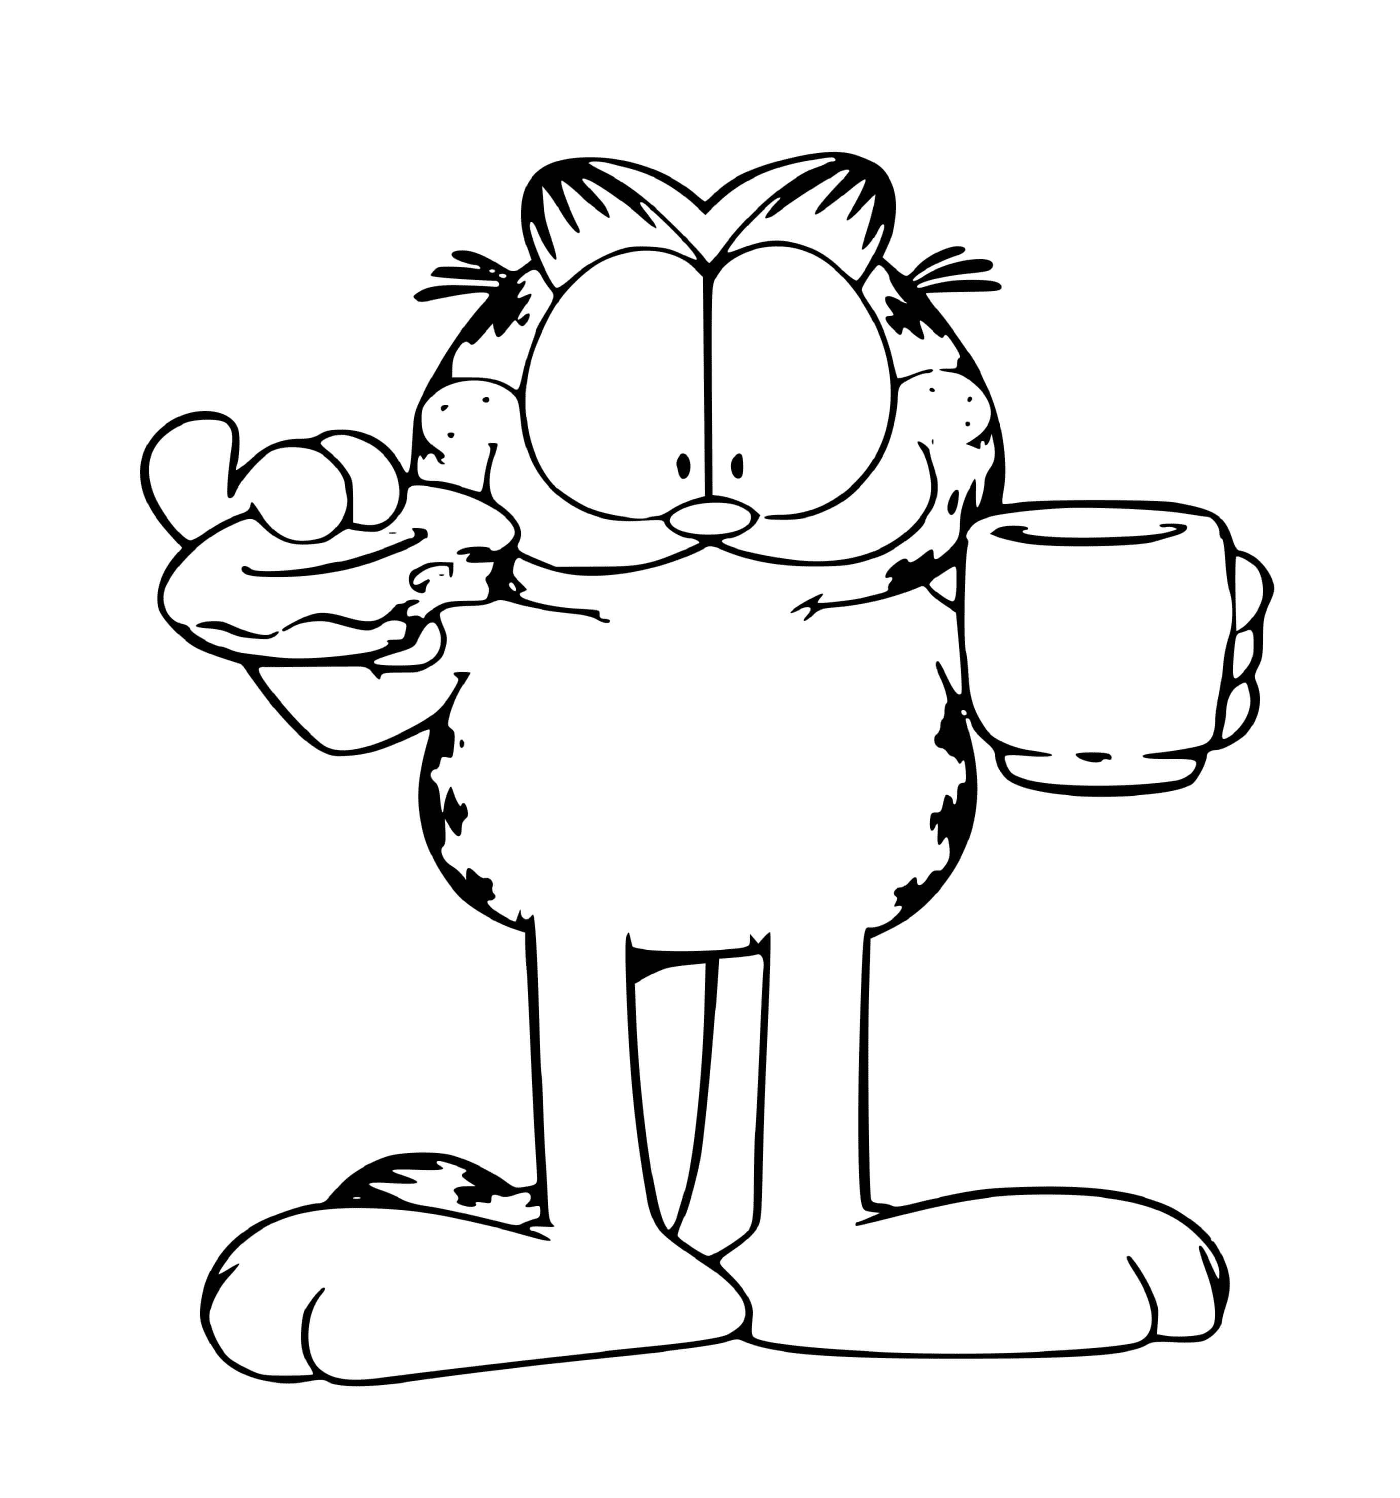  Garfield bebe café e come um donut 